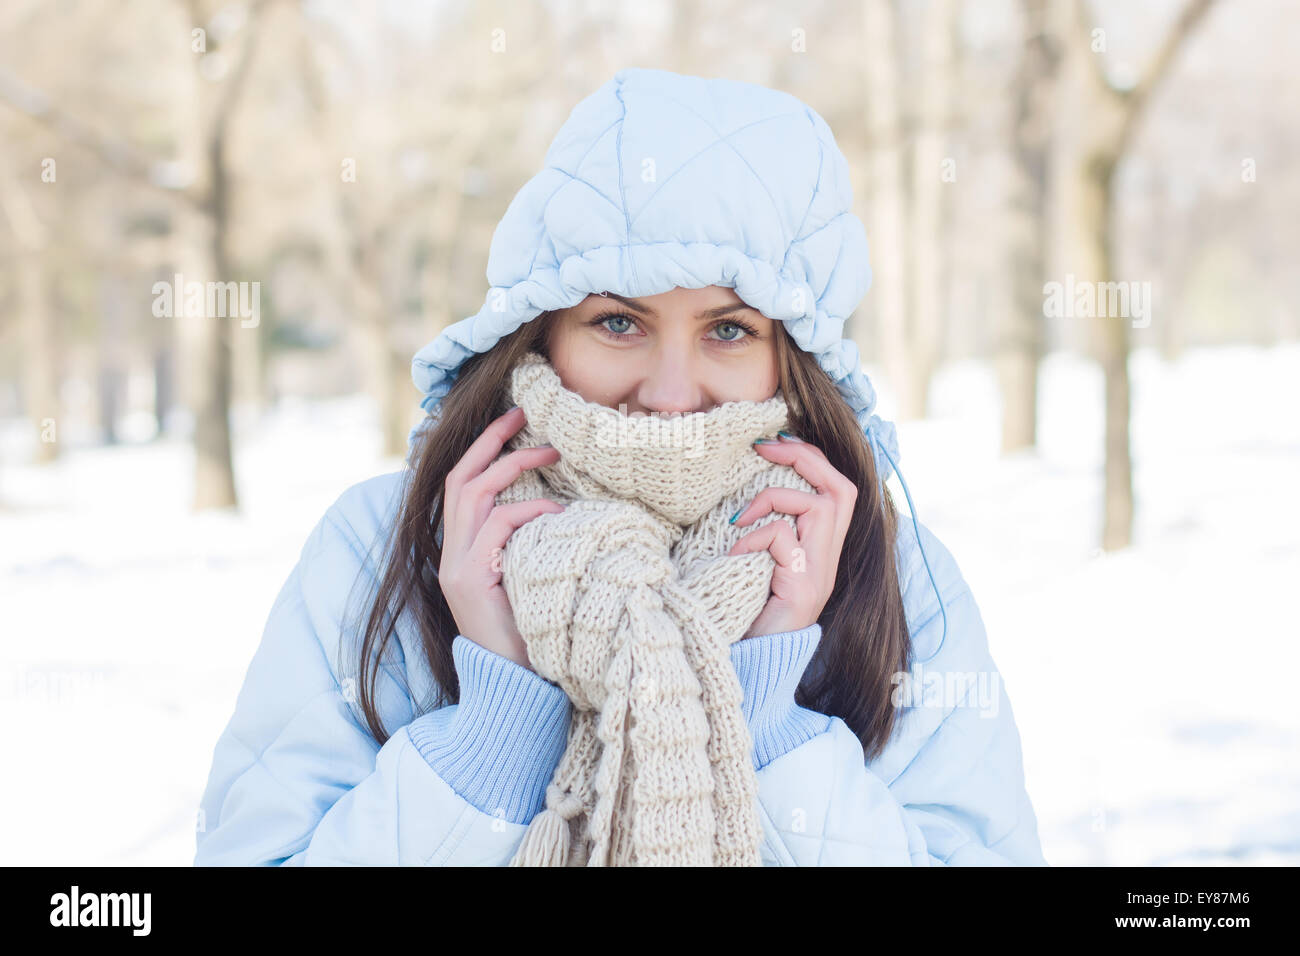 Invierno retrato de joven vistiendo ropa para clima frío día en la nieve. Feliz mujeres caucásicas temporada invierno al aire libre Fotografía de stock Alamy